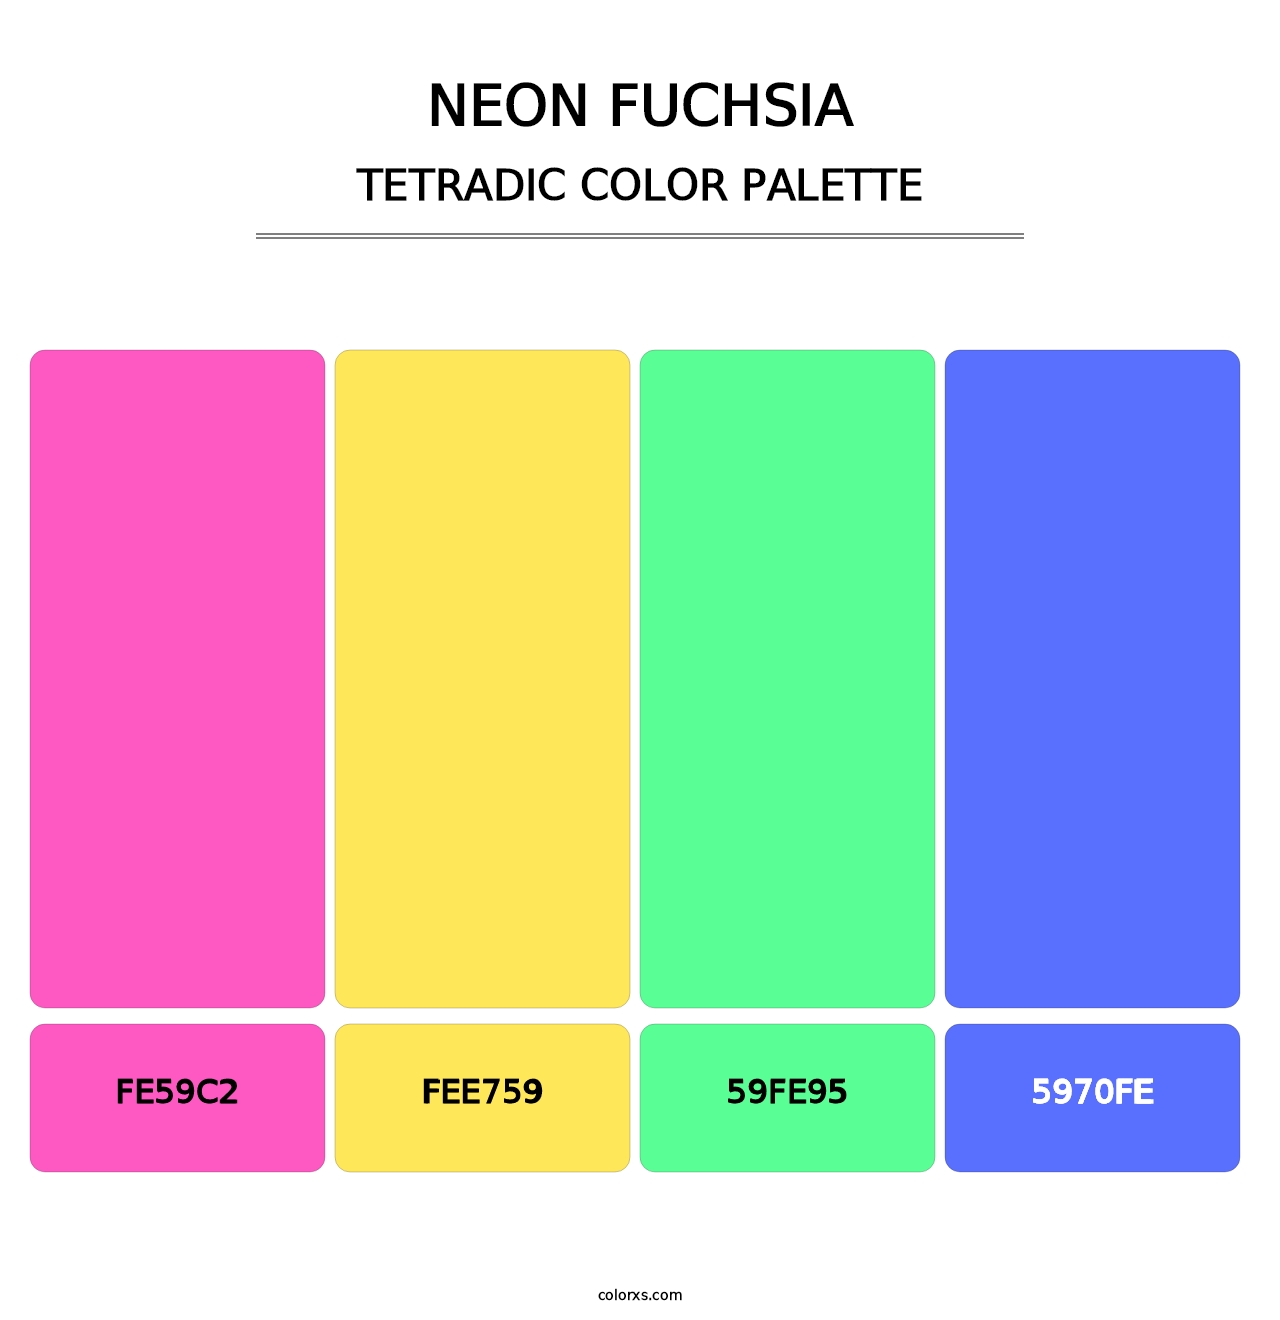 Neon Fuchsia - Tetradic Color Palette